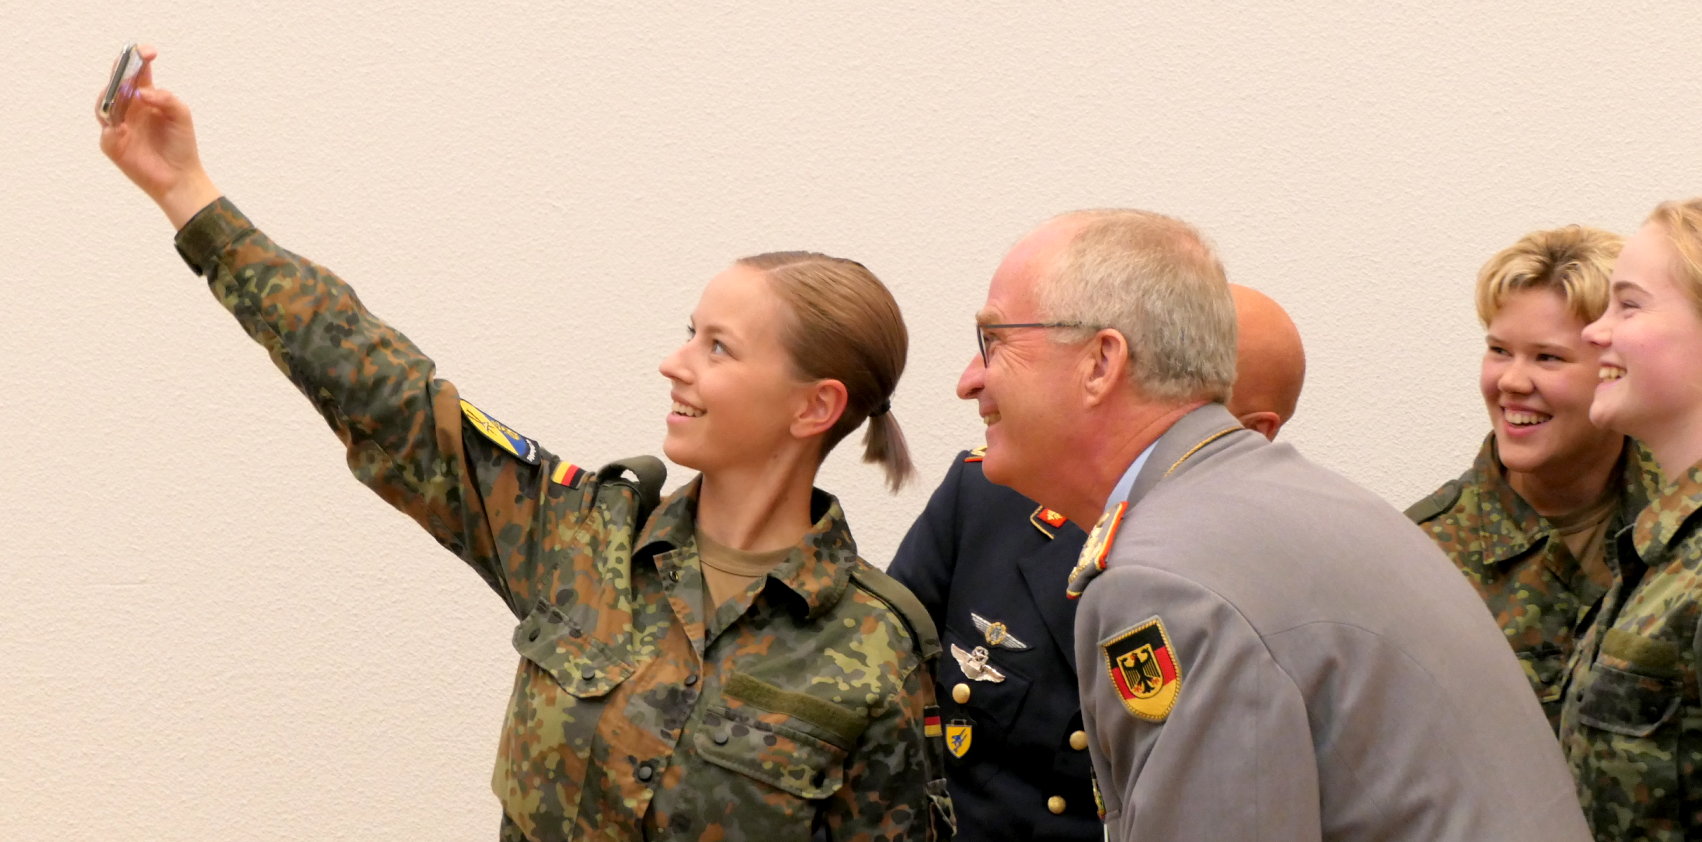 DIE REKRUTINNEN Bundeswehr Exclusive